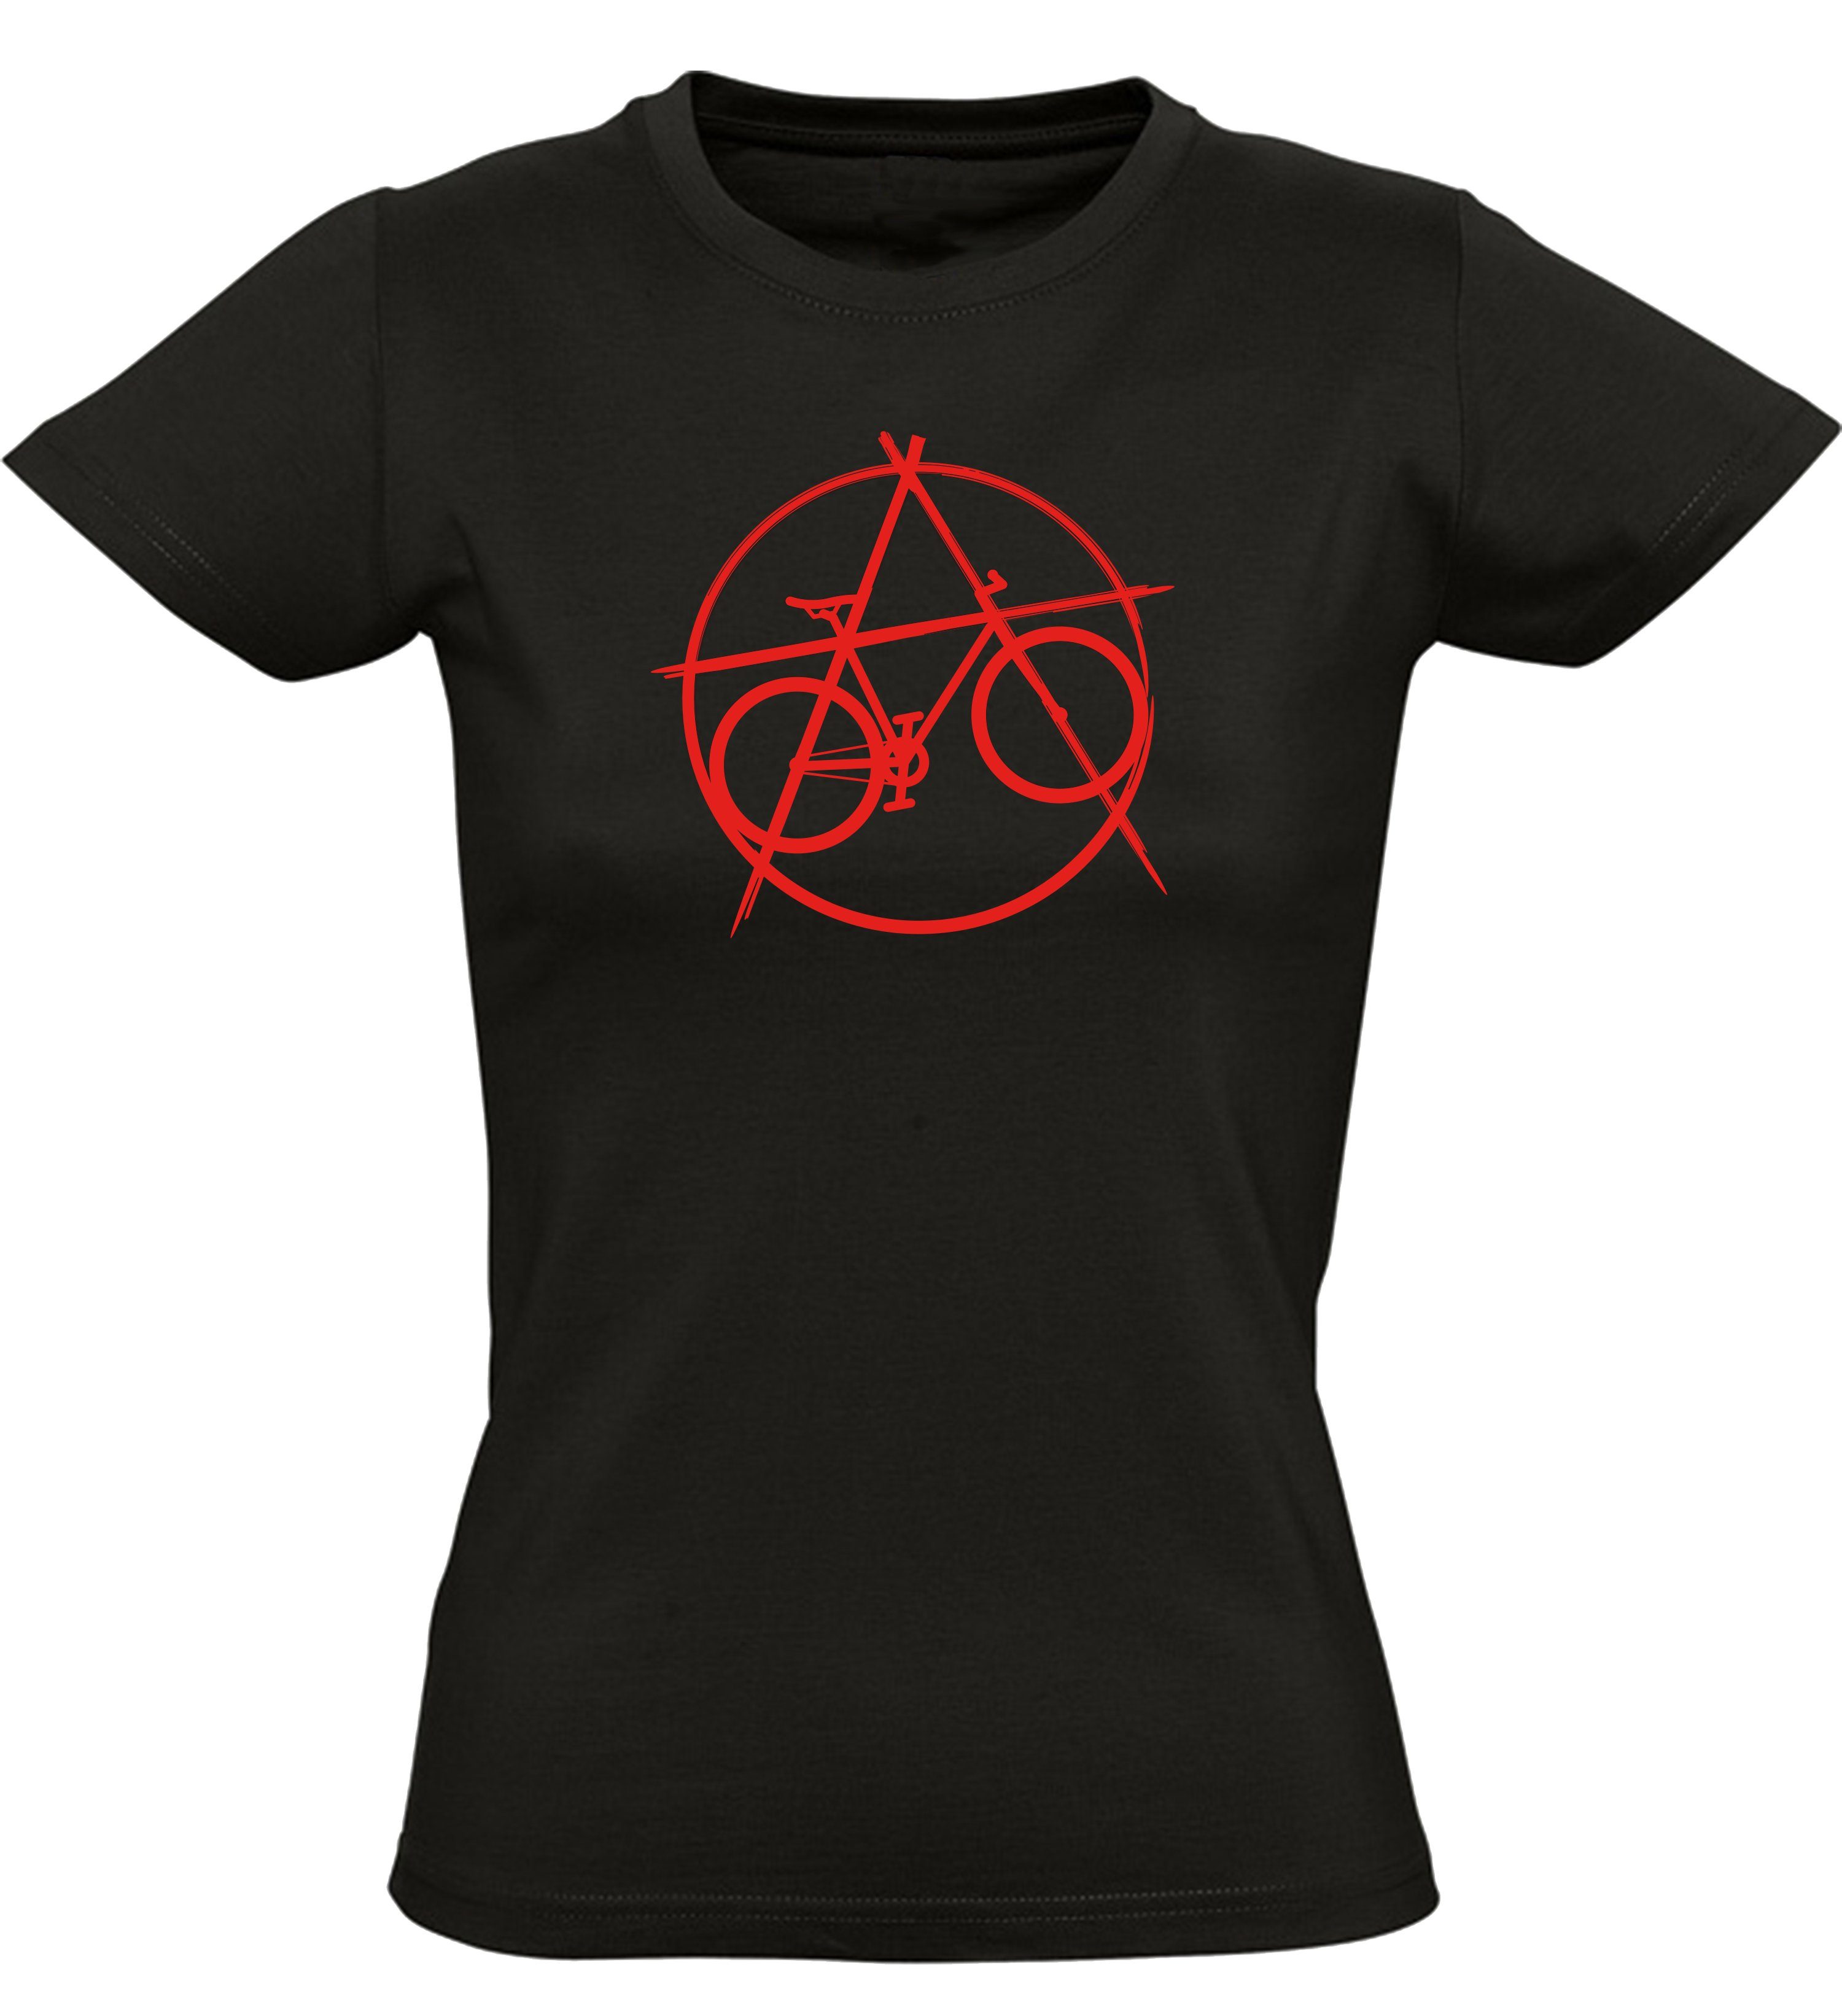 Baddery Print-Shirt Fahrrad T-Shirt : Anarchy Bike - Sport Tshirts Damen, hochwertiger Siebdruck